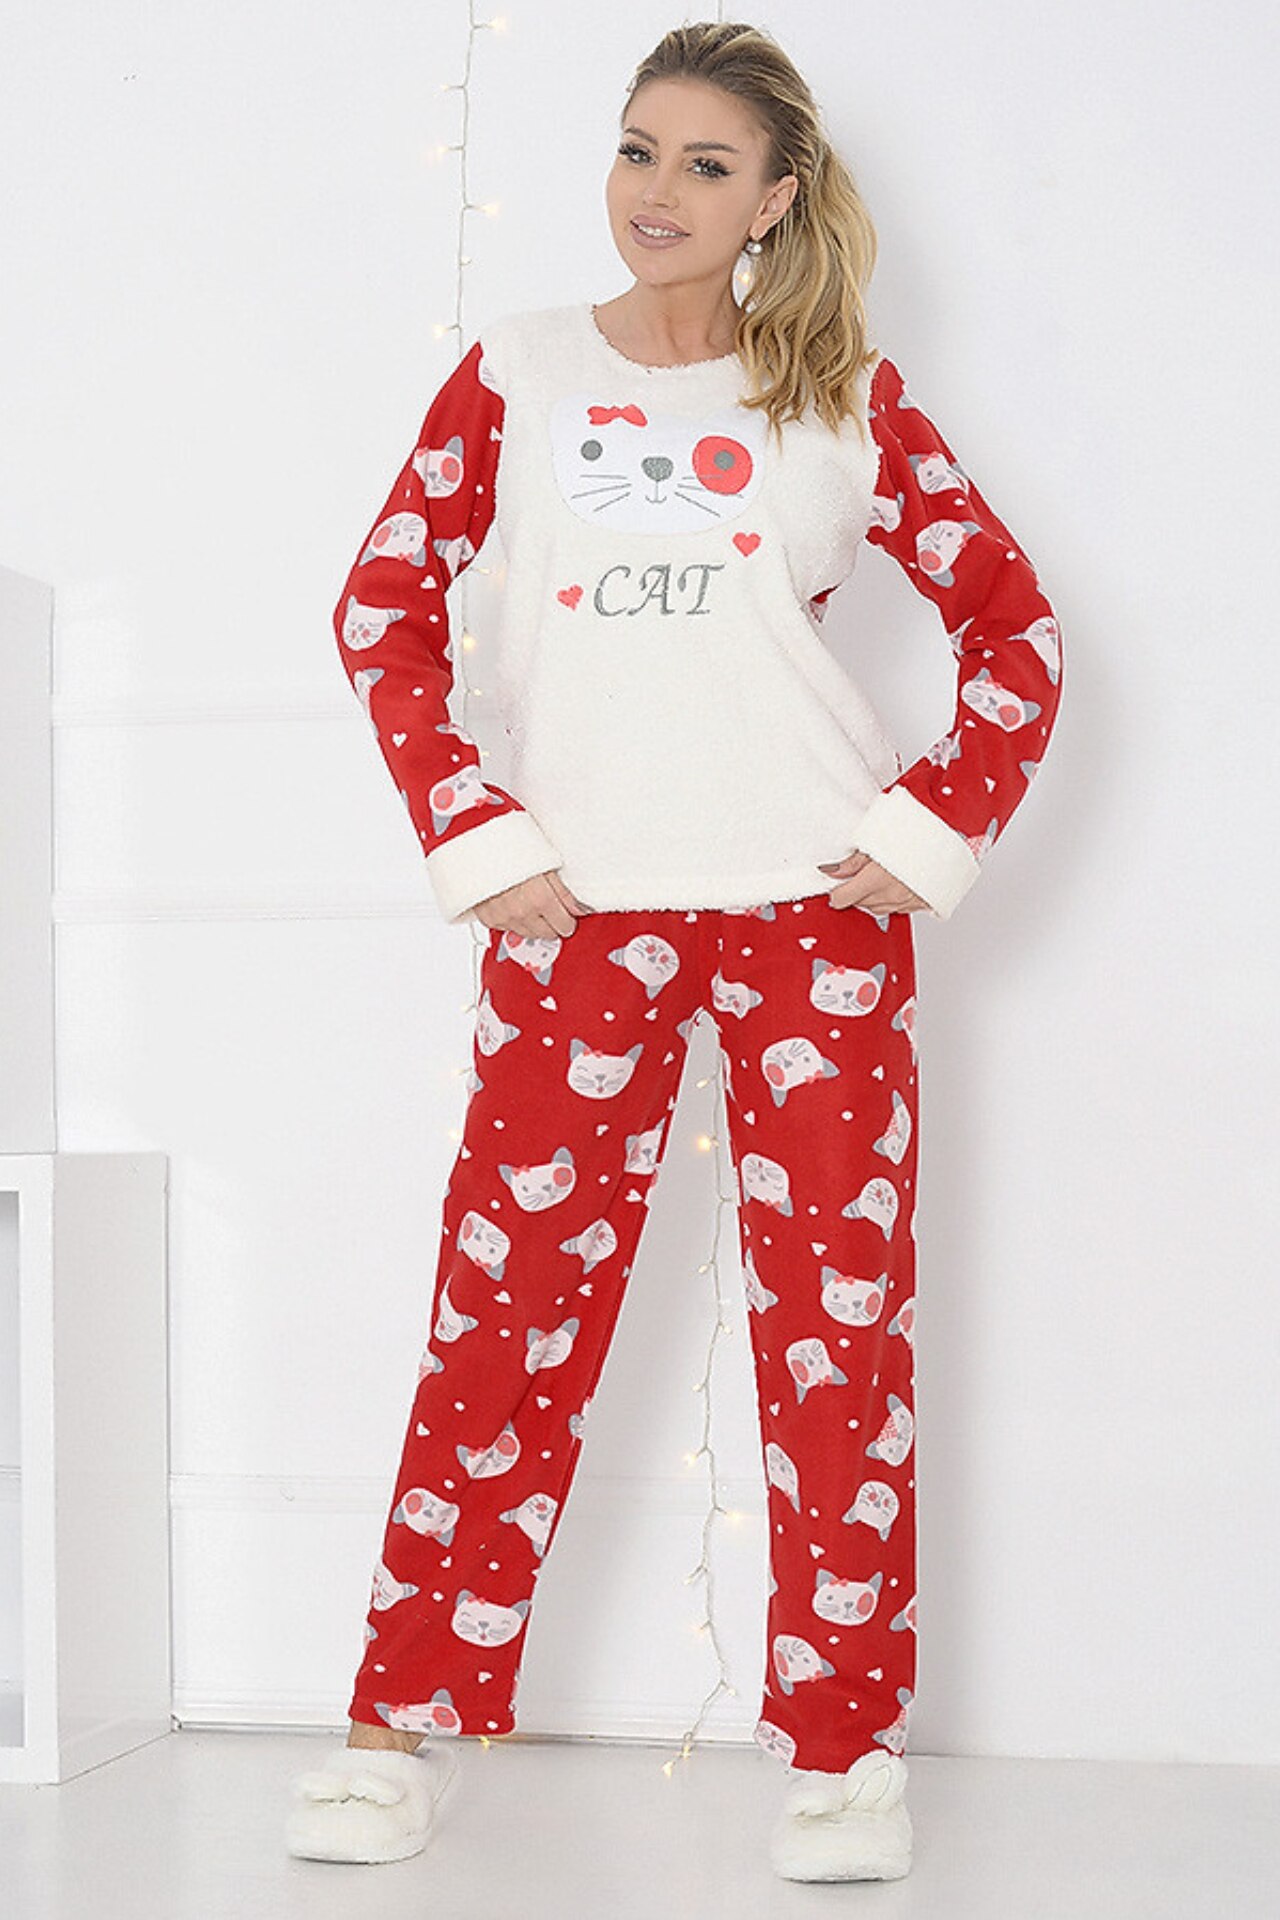 Pijama pufoasa cu Cat, Rosu Alb, L -